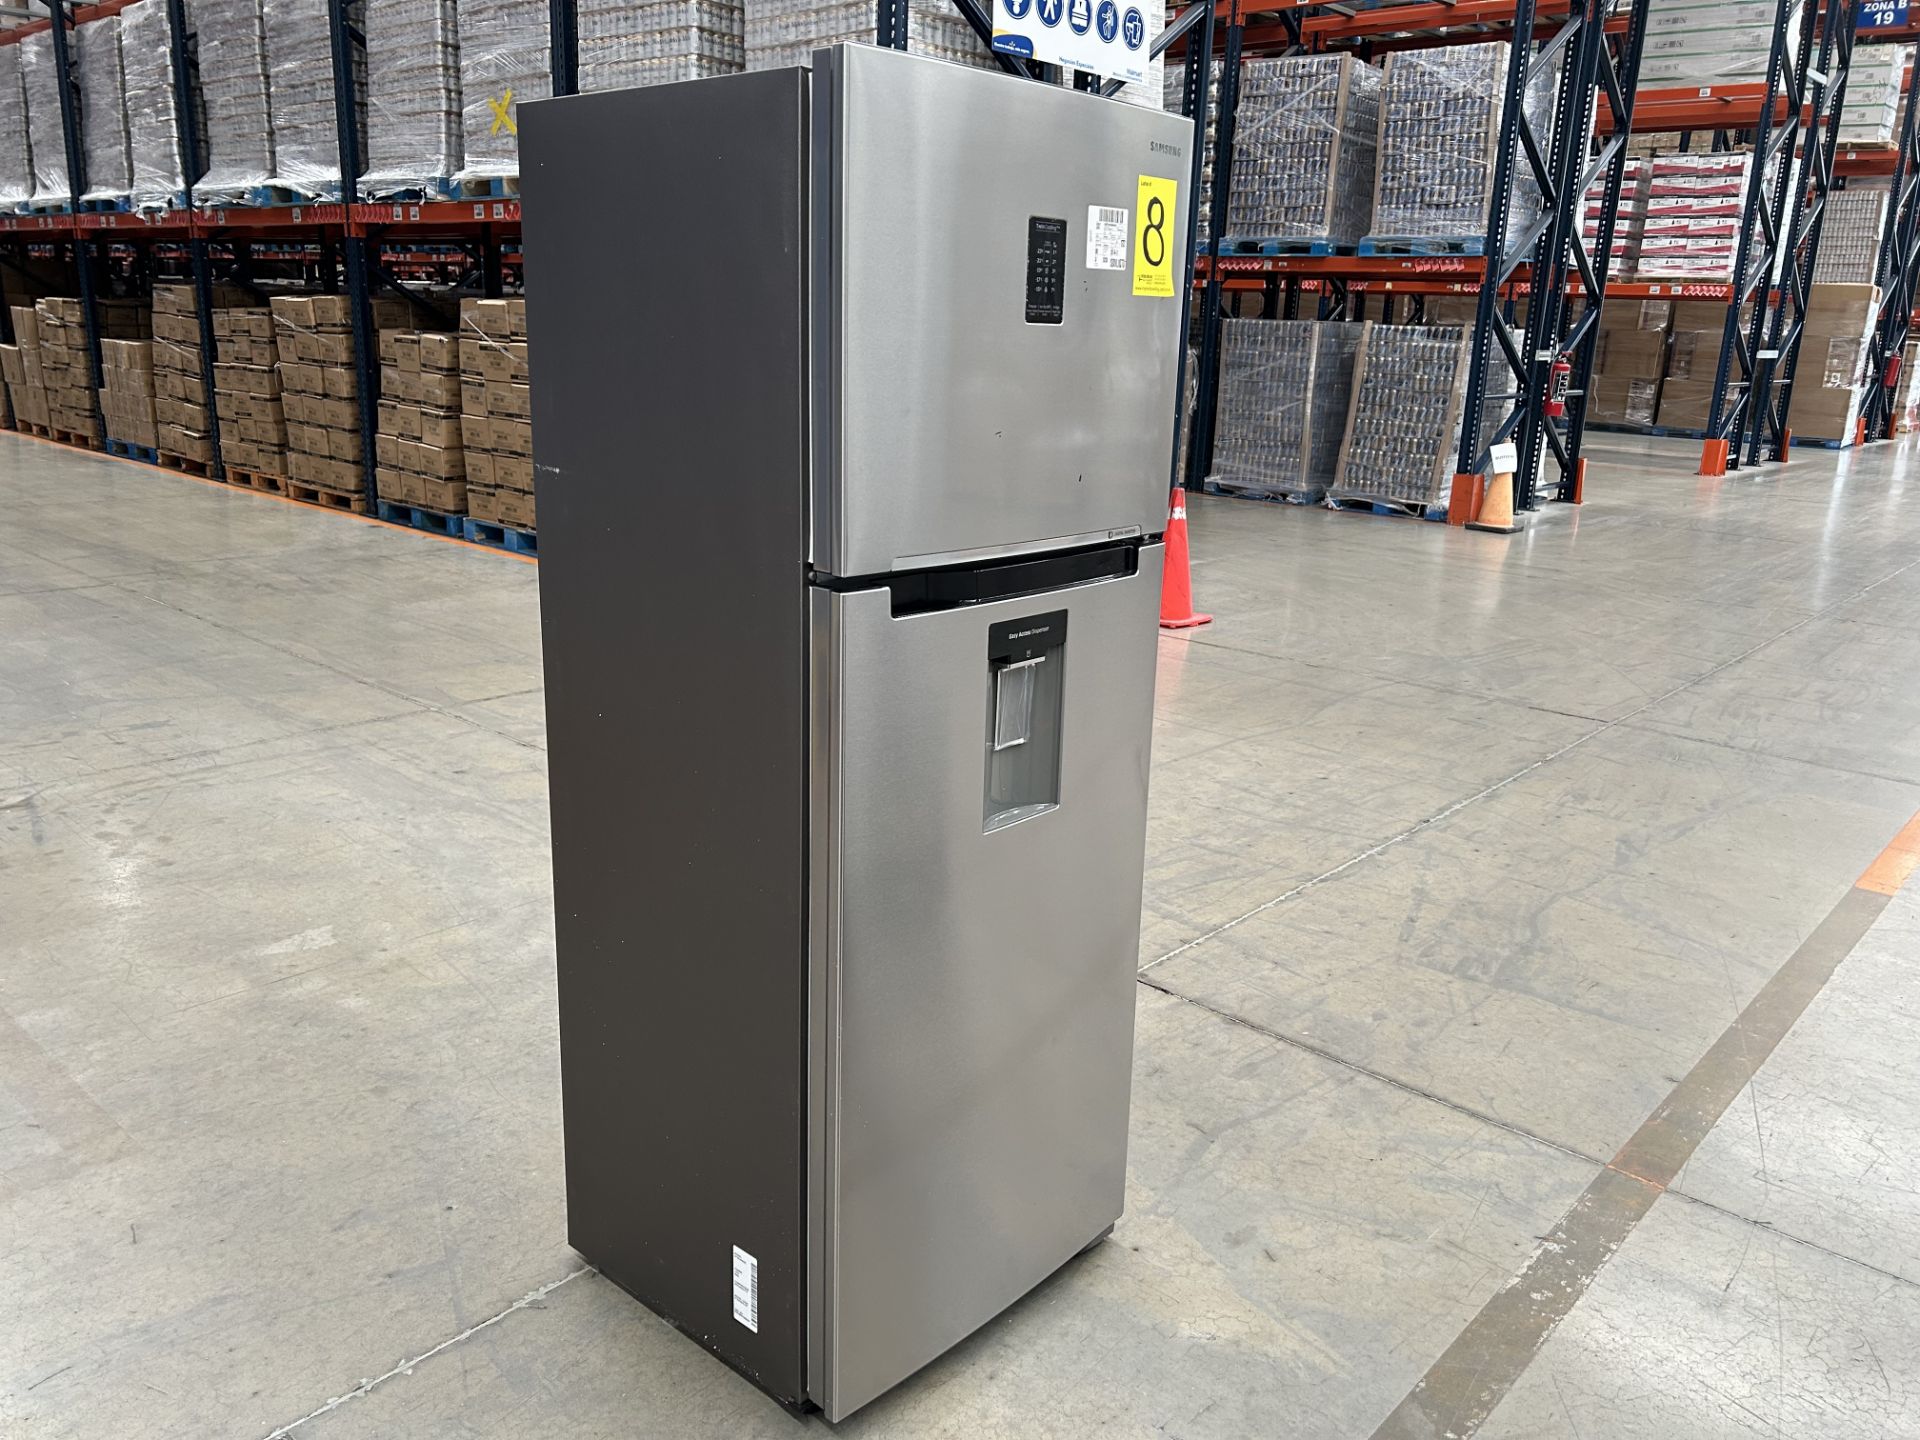 (NUEVO) Lote de 1 Refrigerador con dispensador de agua Marca SAMSUNG, Modelo RT38A5982SL, Serie 400 - Image 2 of 5